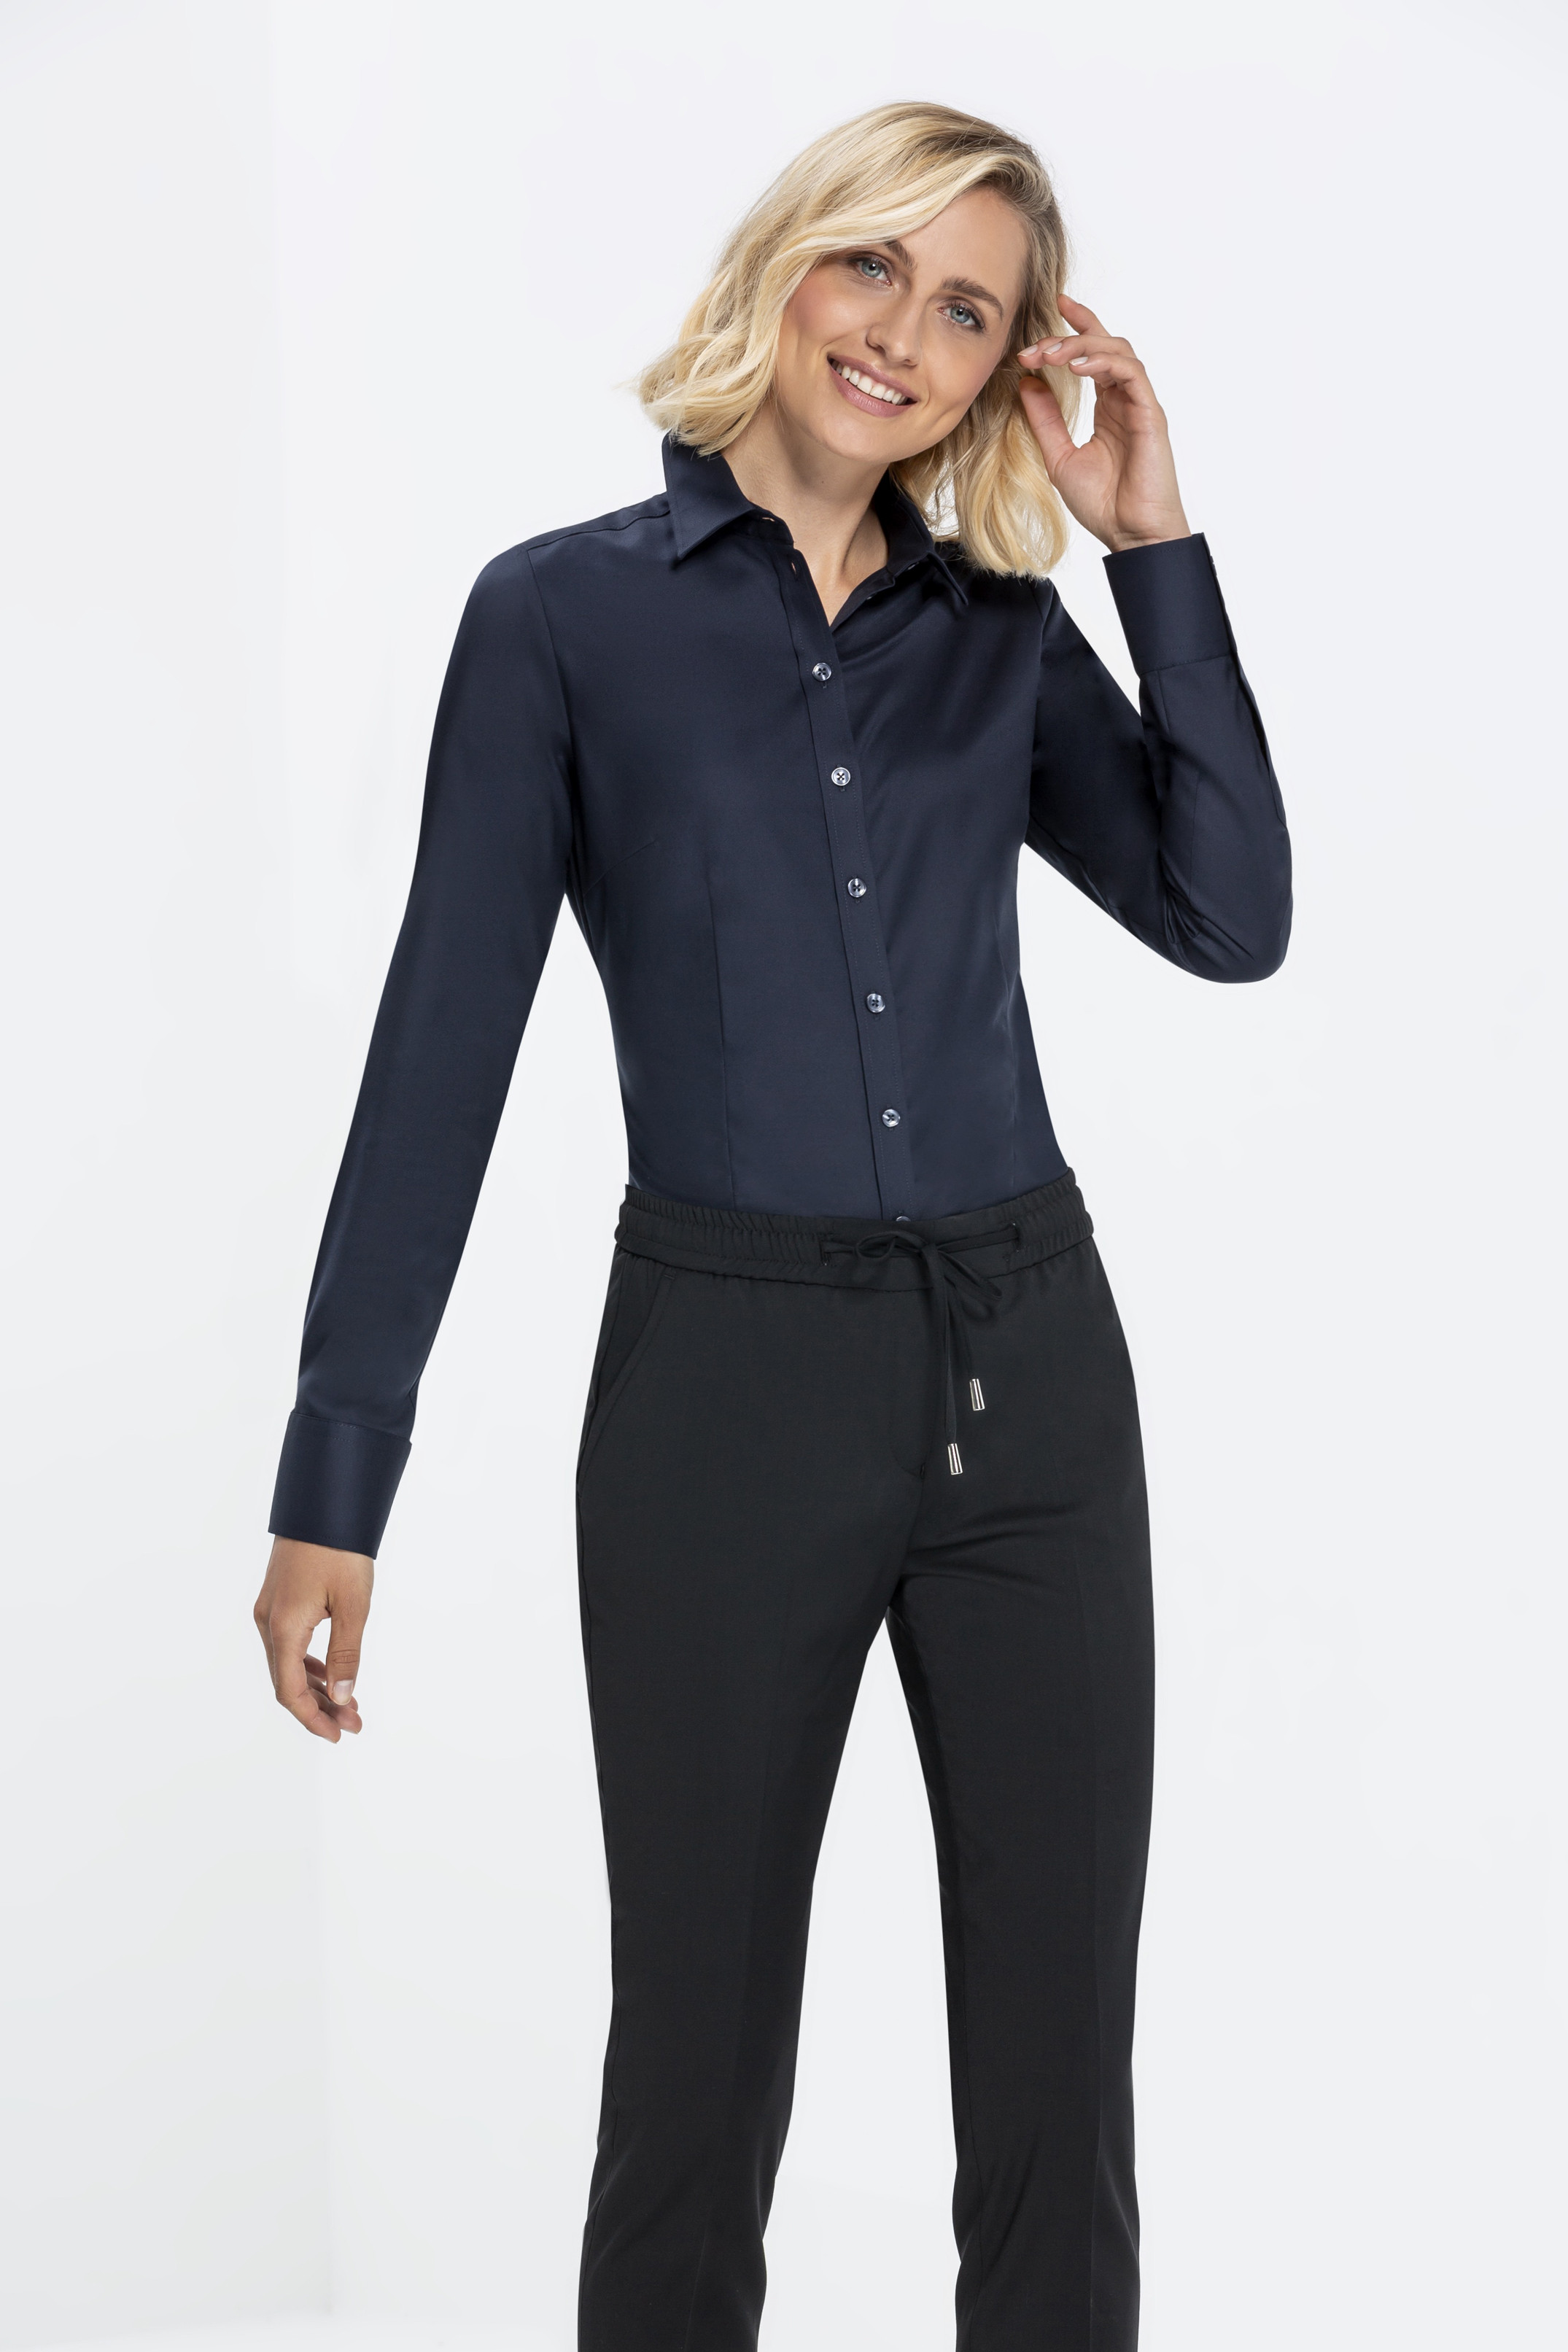 Ladies blouse MODERN 37.5 slim fit